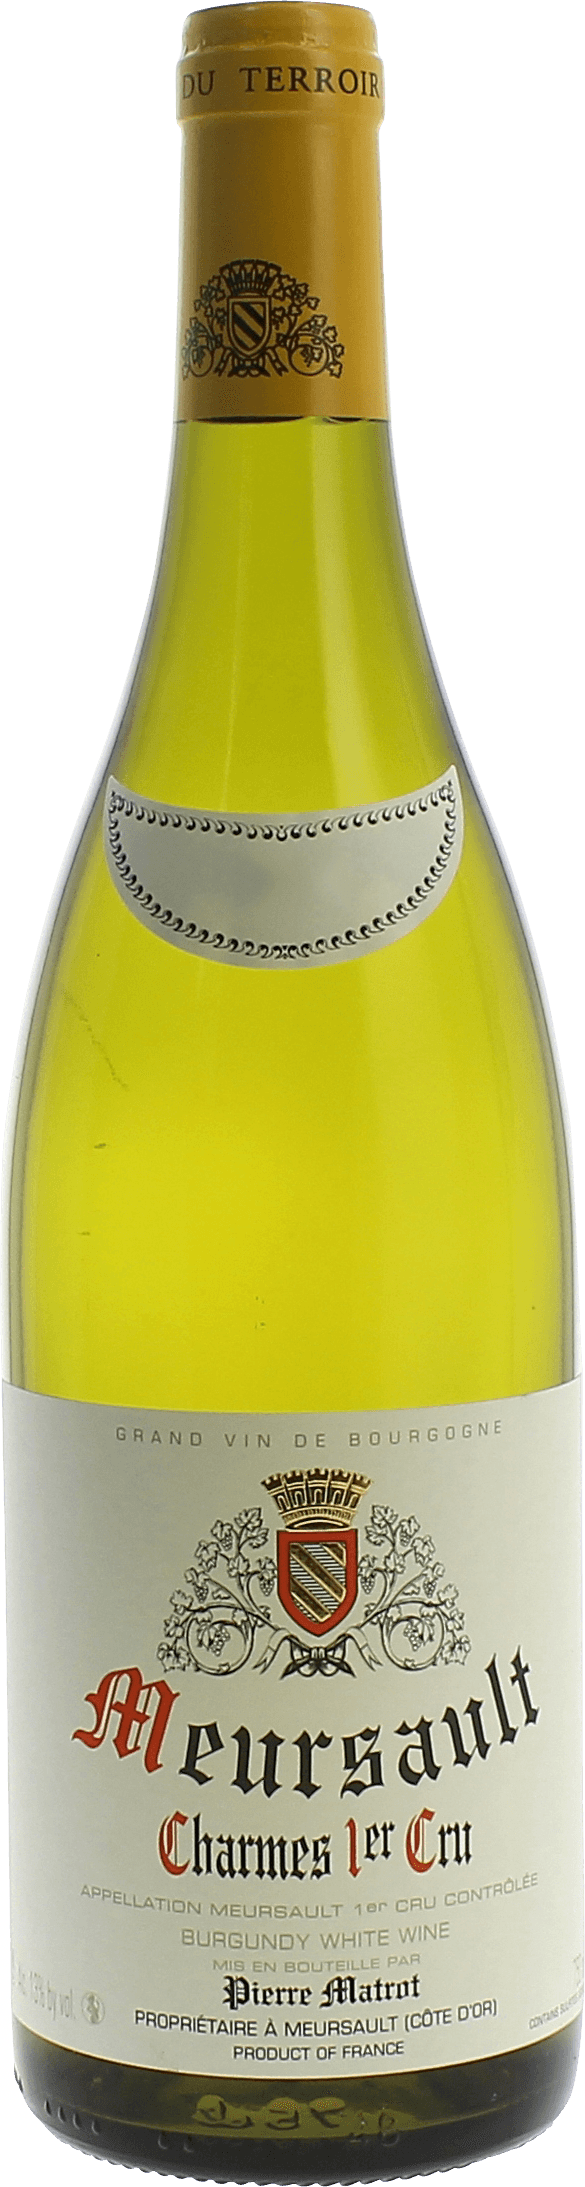 Meursault charmes 1er cru 2016 Domaine MATROT, Bourgogne blanc